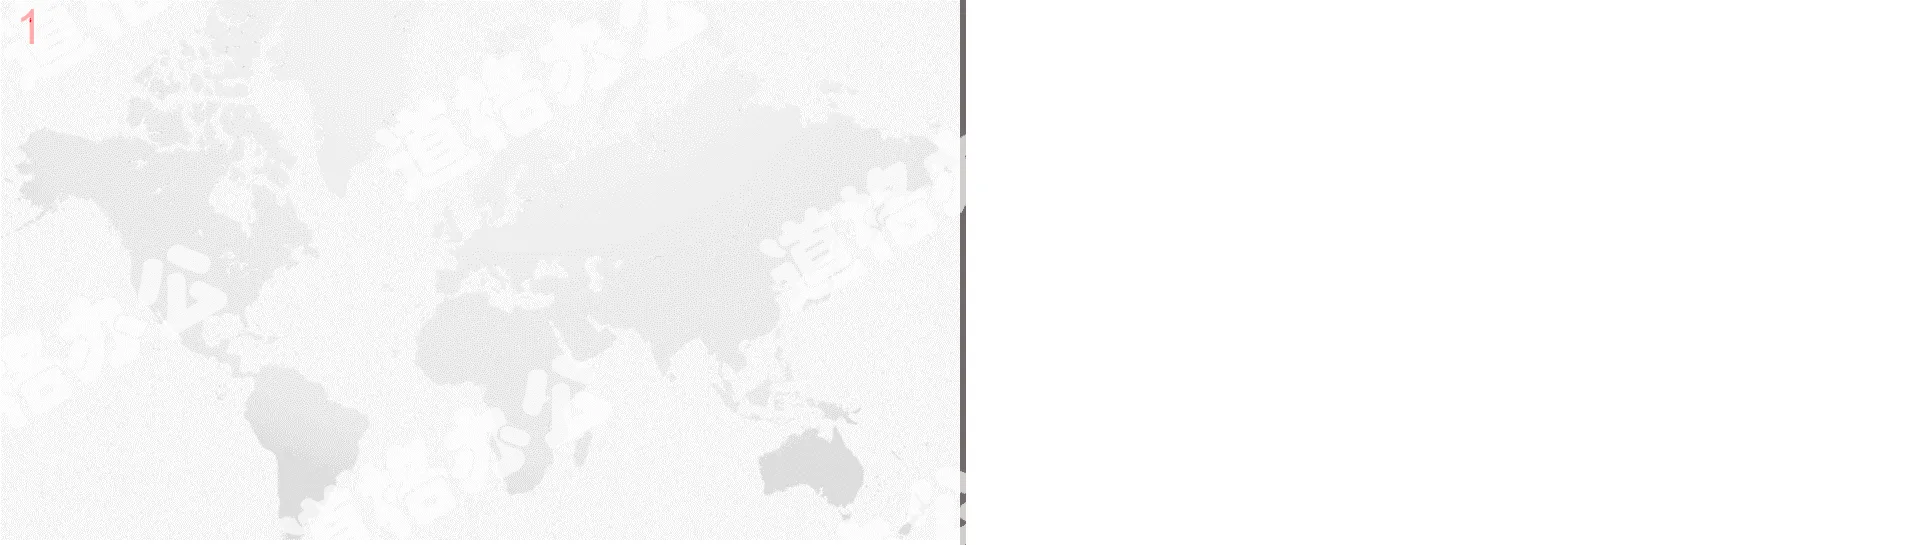 灰色世界地图背景的商务PPT背景图片